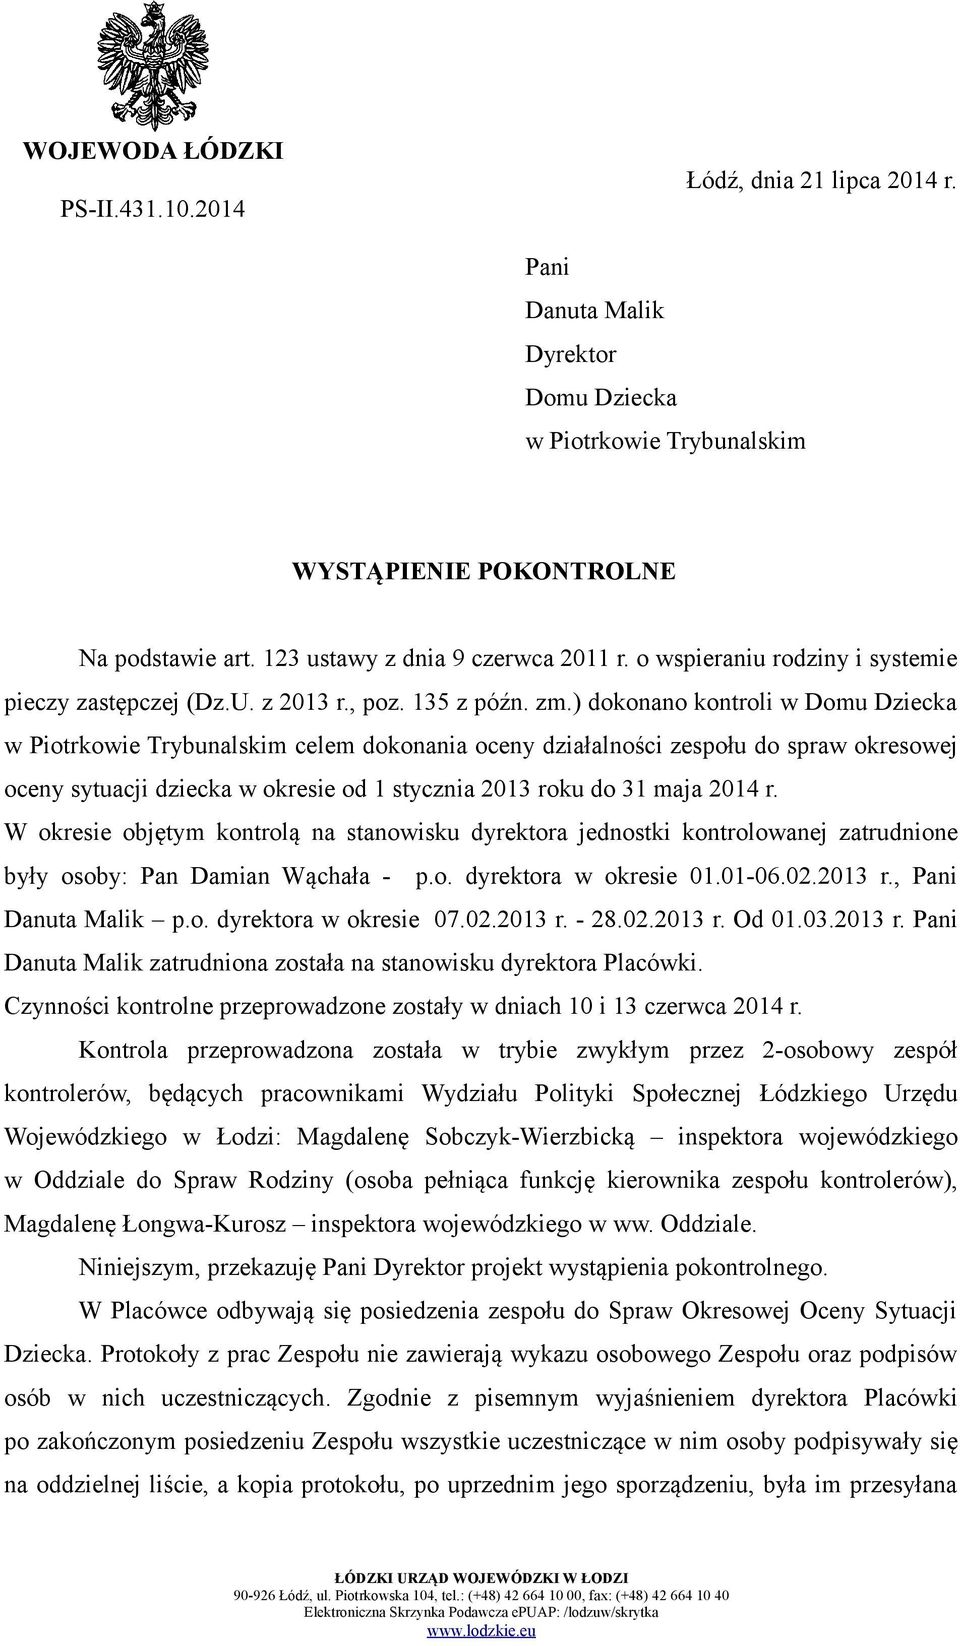 ) dokonano kontroli w Domu Dziecka w Piotrkowie Trybunalskim celem dokonania oceny działalności zespołu do spraw okresowej oceny sytuacji dziecka w okresie od 1 stycznia 2013 roku do 31 maja 2014 r.